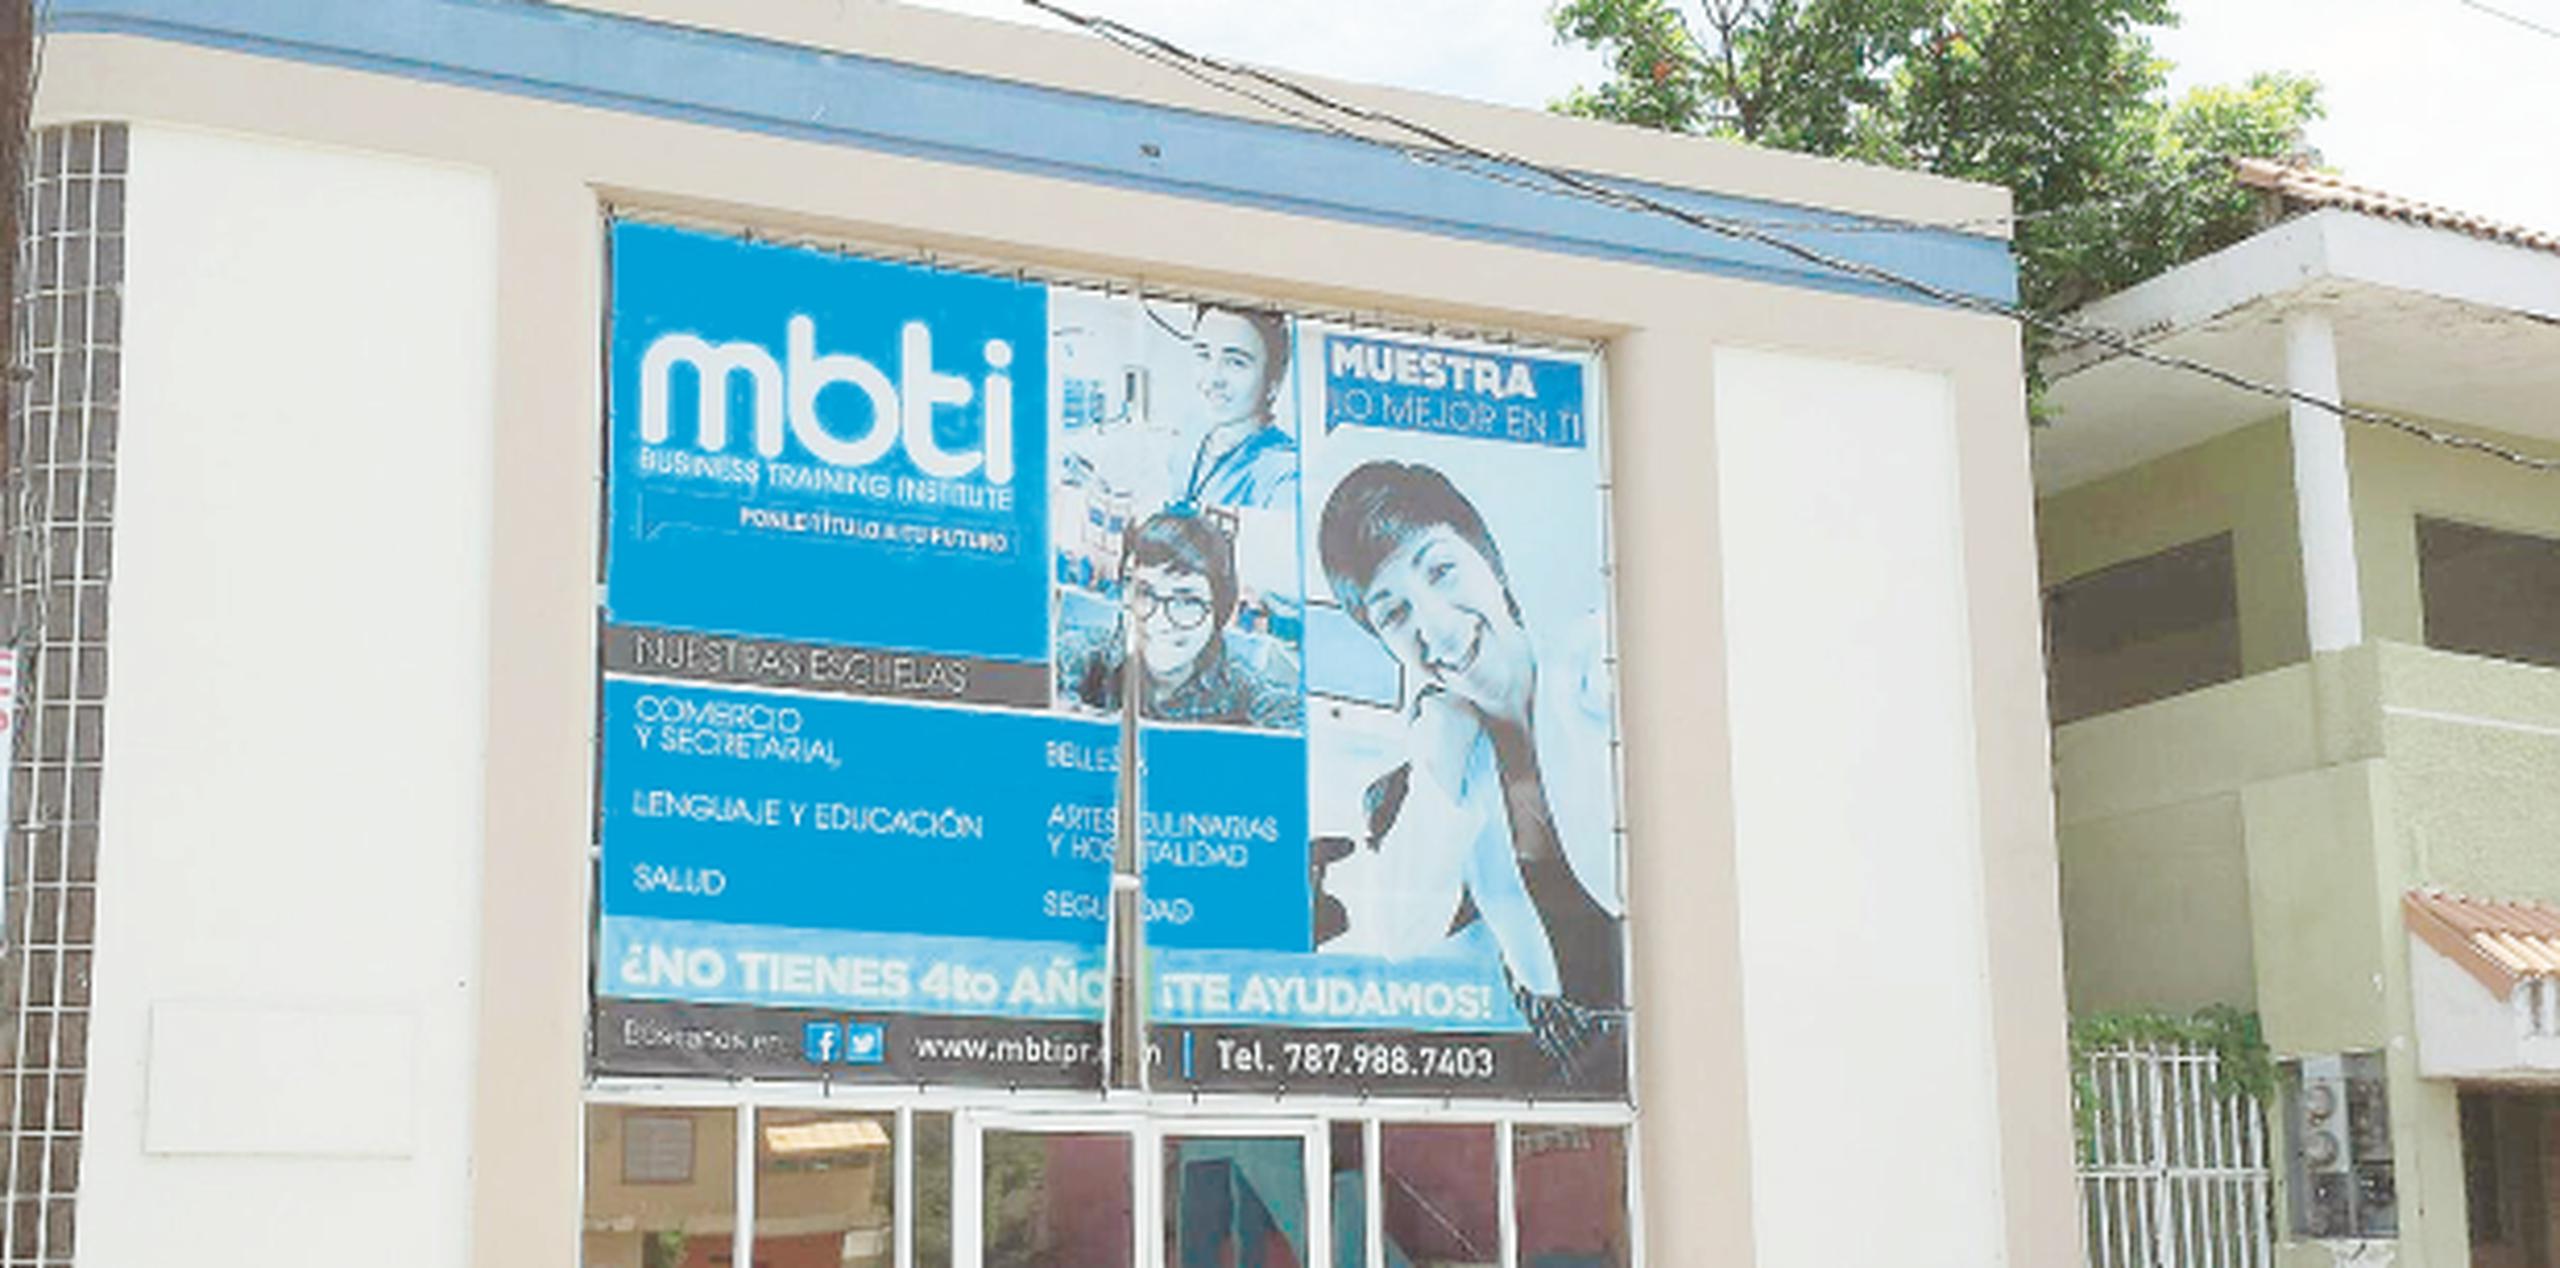 El cierre del instituto técnico MBTI, además de afectar a miles de alumnos, impacta de forma negativa el comercio del casco fajardeño, al igual que ocurre en Mayaguez y Bayamón. (barbara.figueroa@gfrmedia.com)